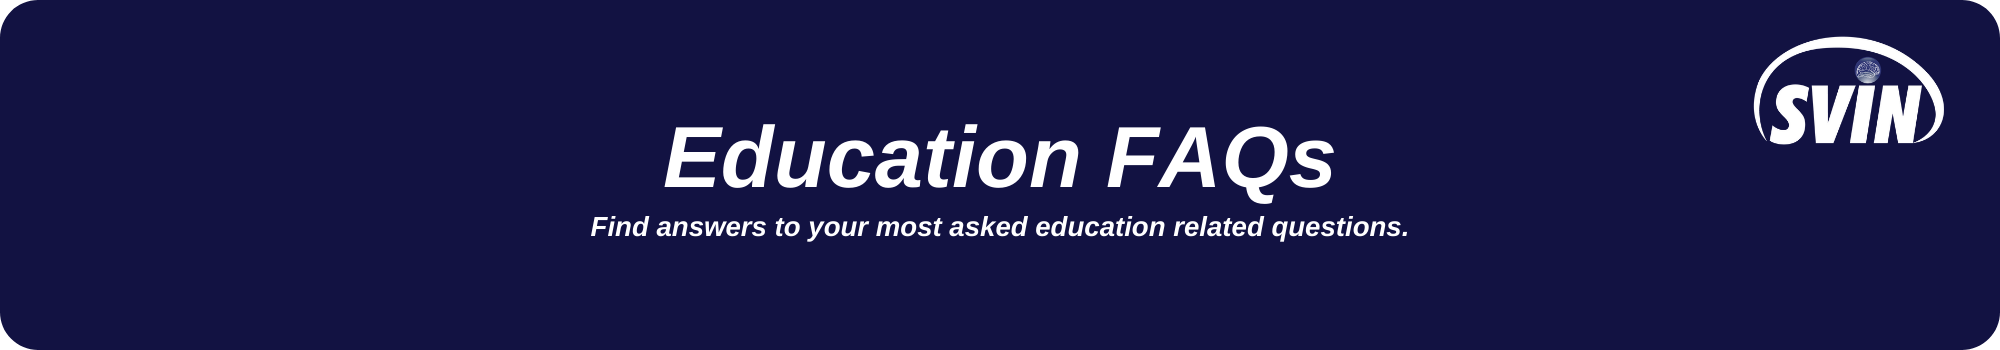 Education FAQs